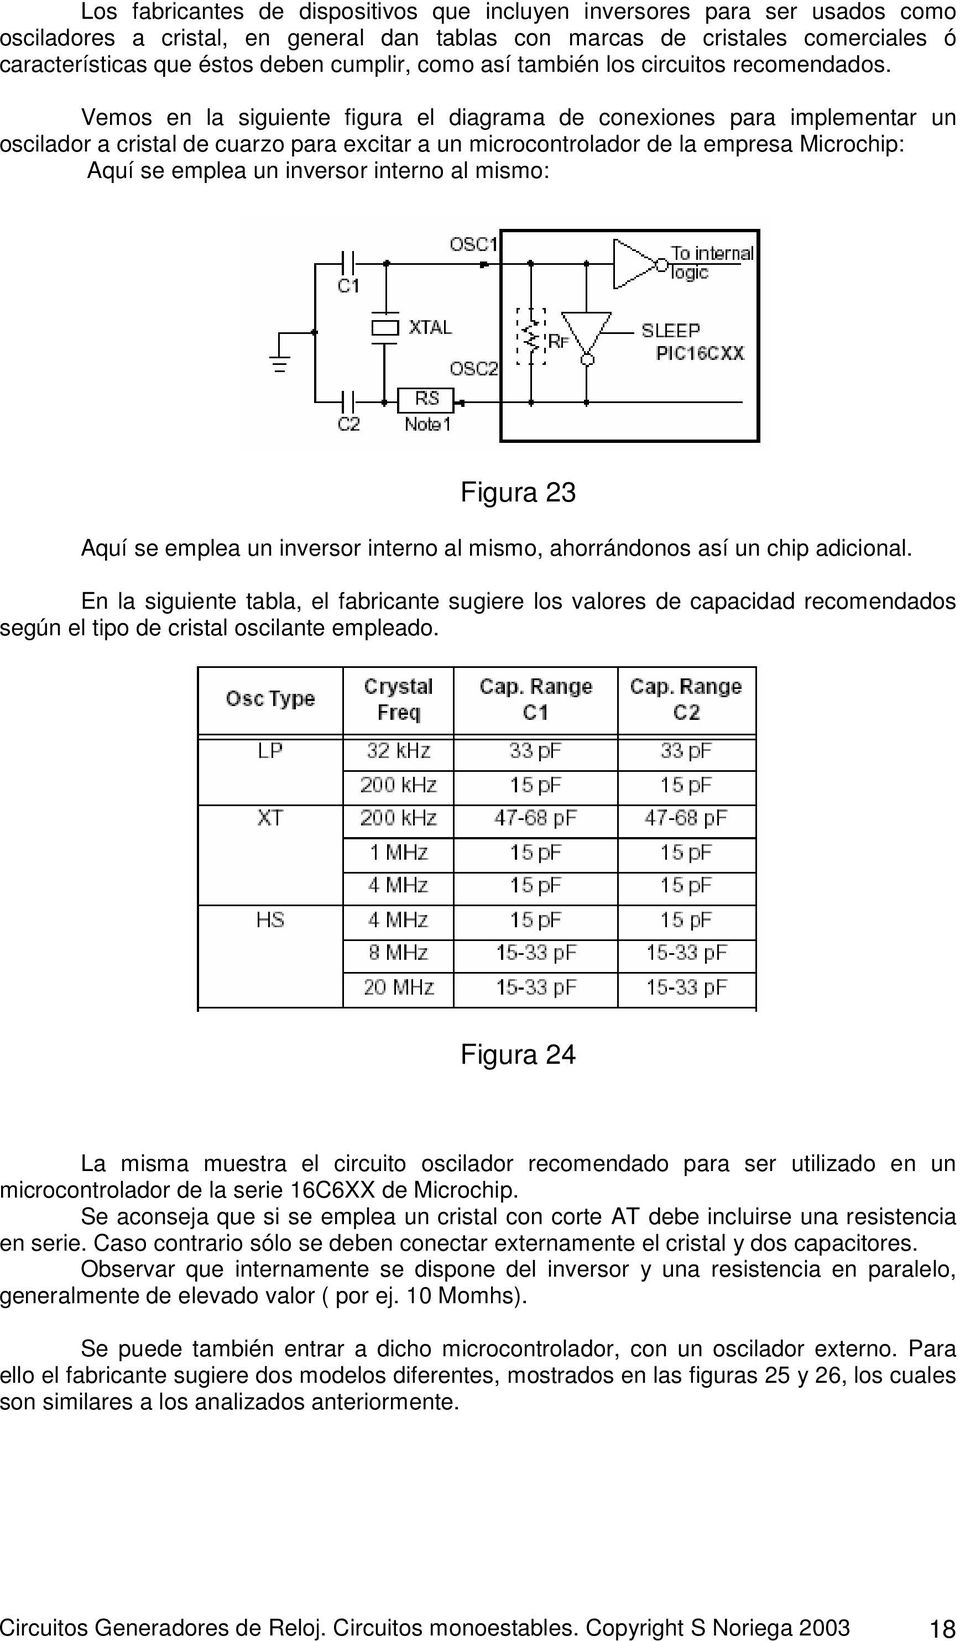 Vemos en la siguiente figura el diagrama de conexiones para implementar un oscilador a cristal de cuarzo para excitar a un microcontrolador de la empresa Microchip: Aquí se emplea un inversor interno